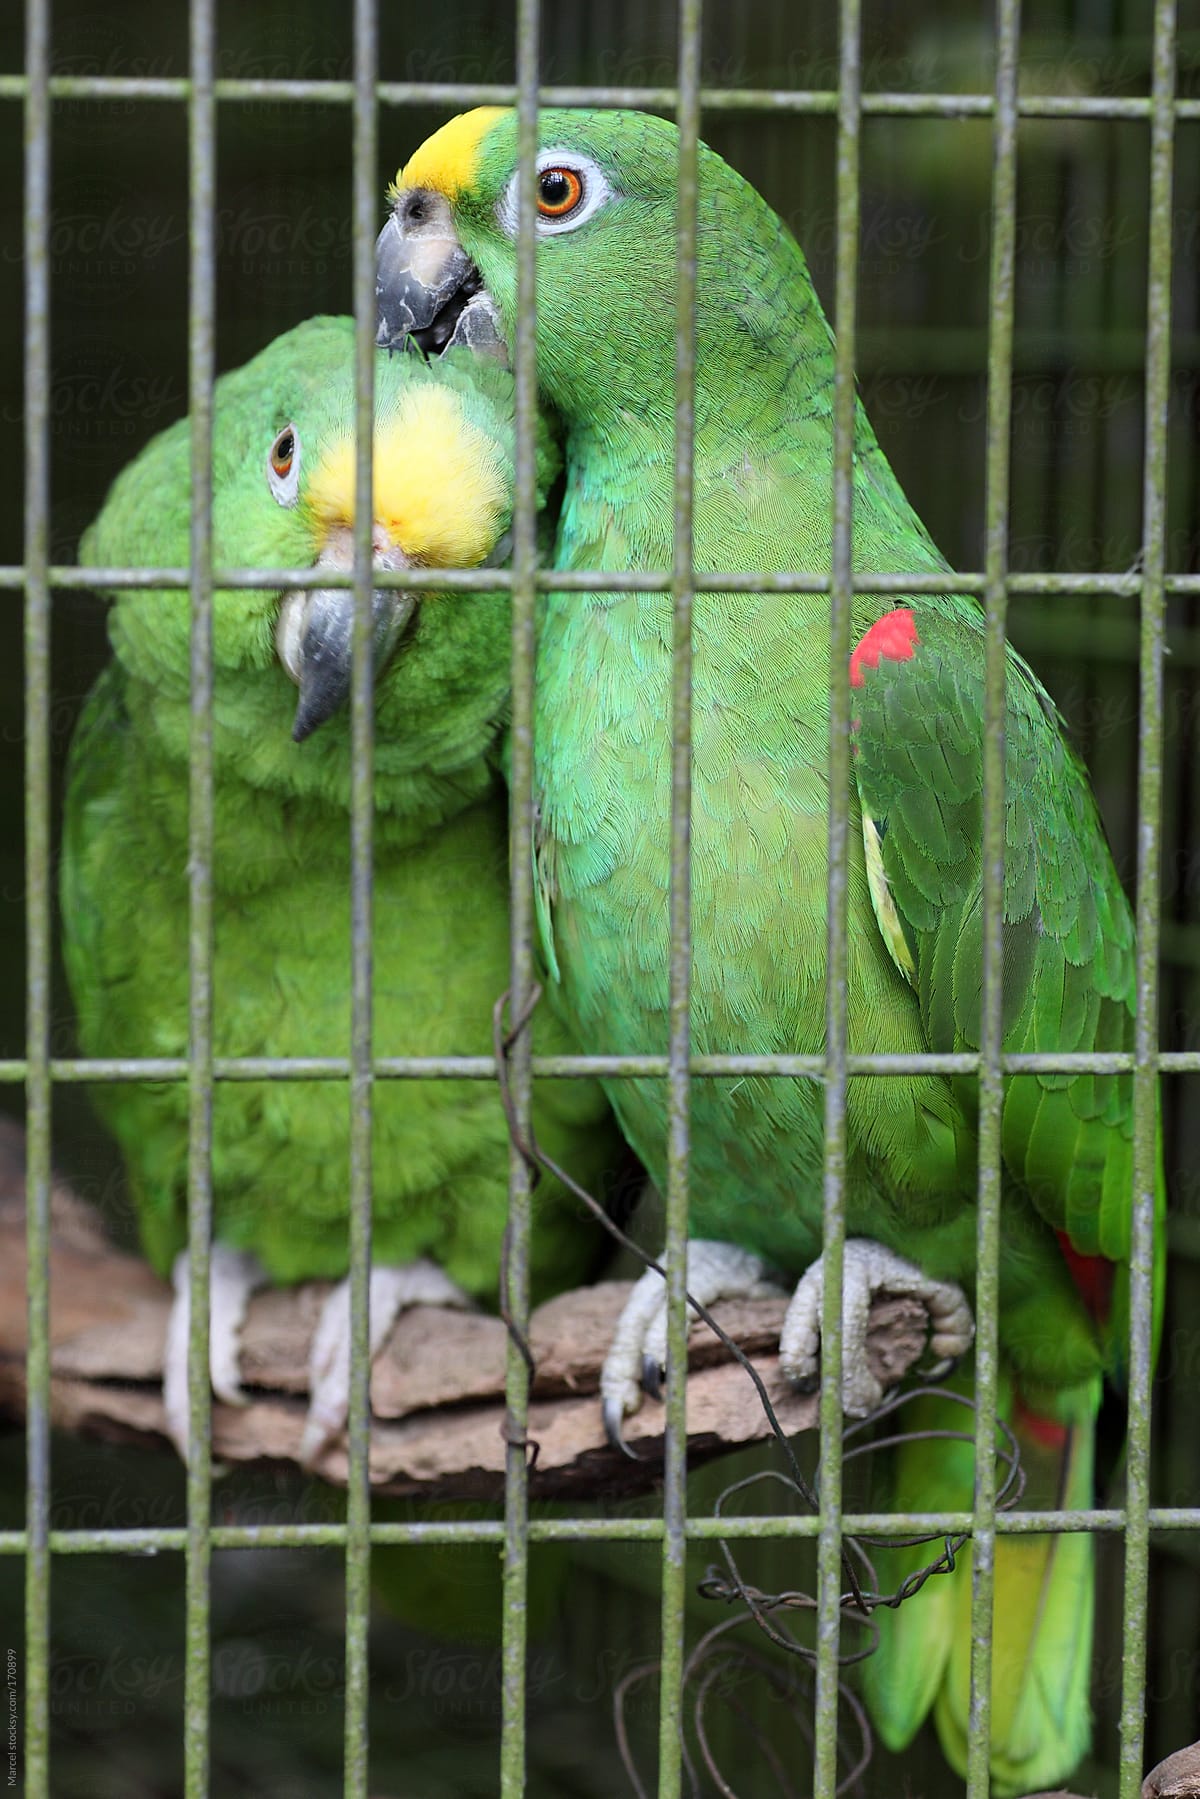 Affectionate parrots